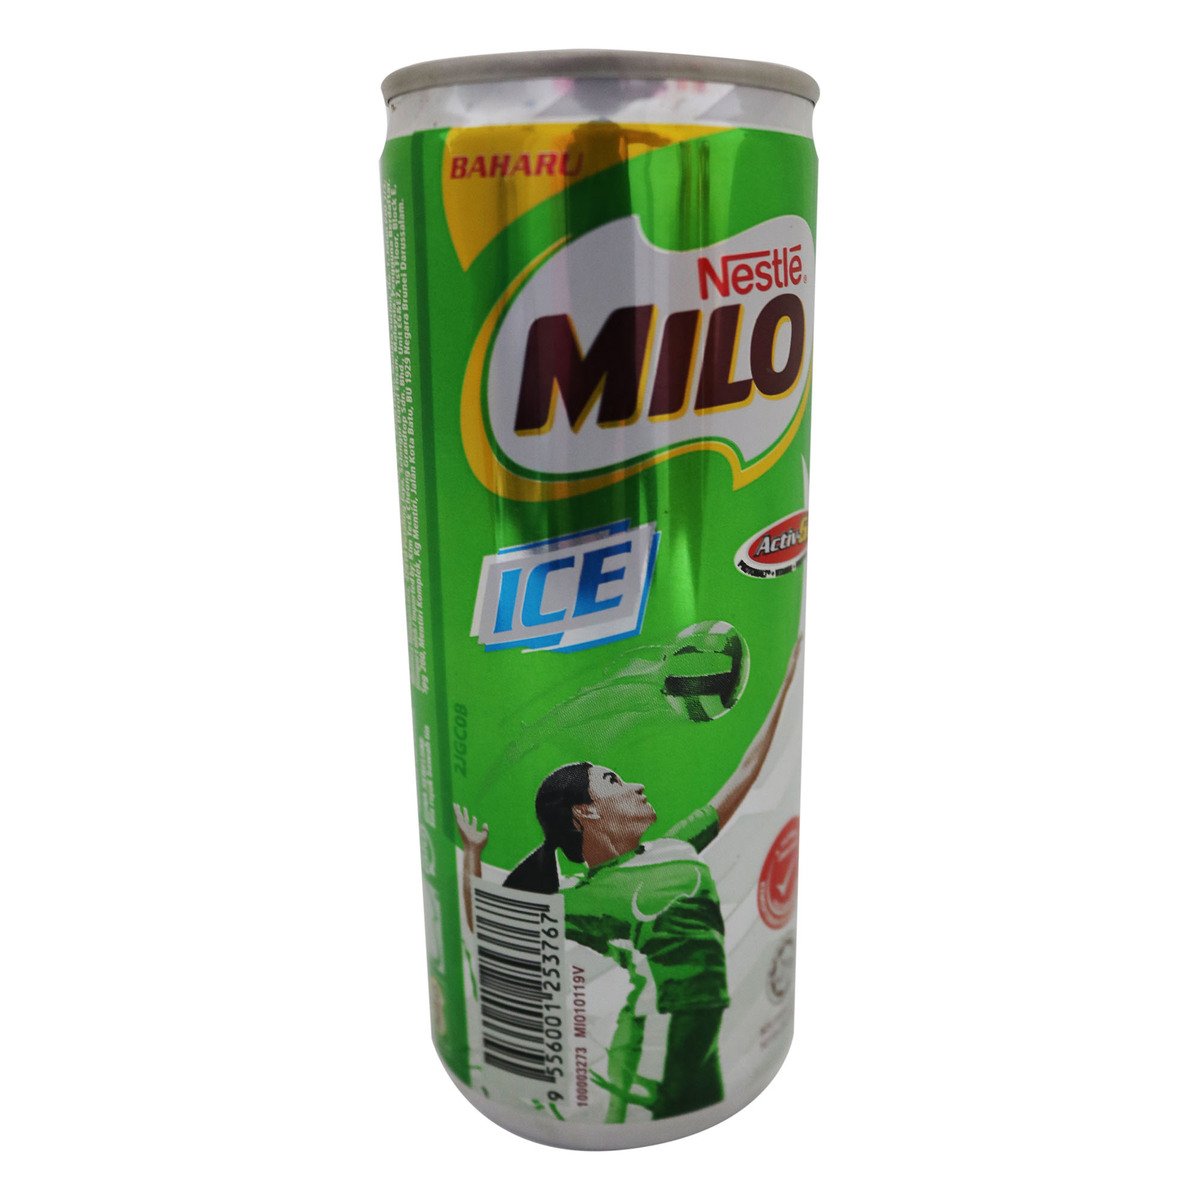 Milo Activ-Go Ice Can 240ml